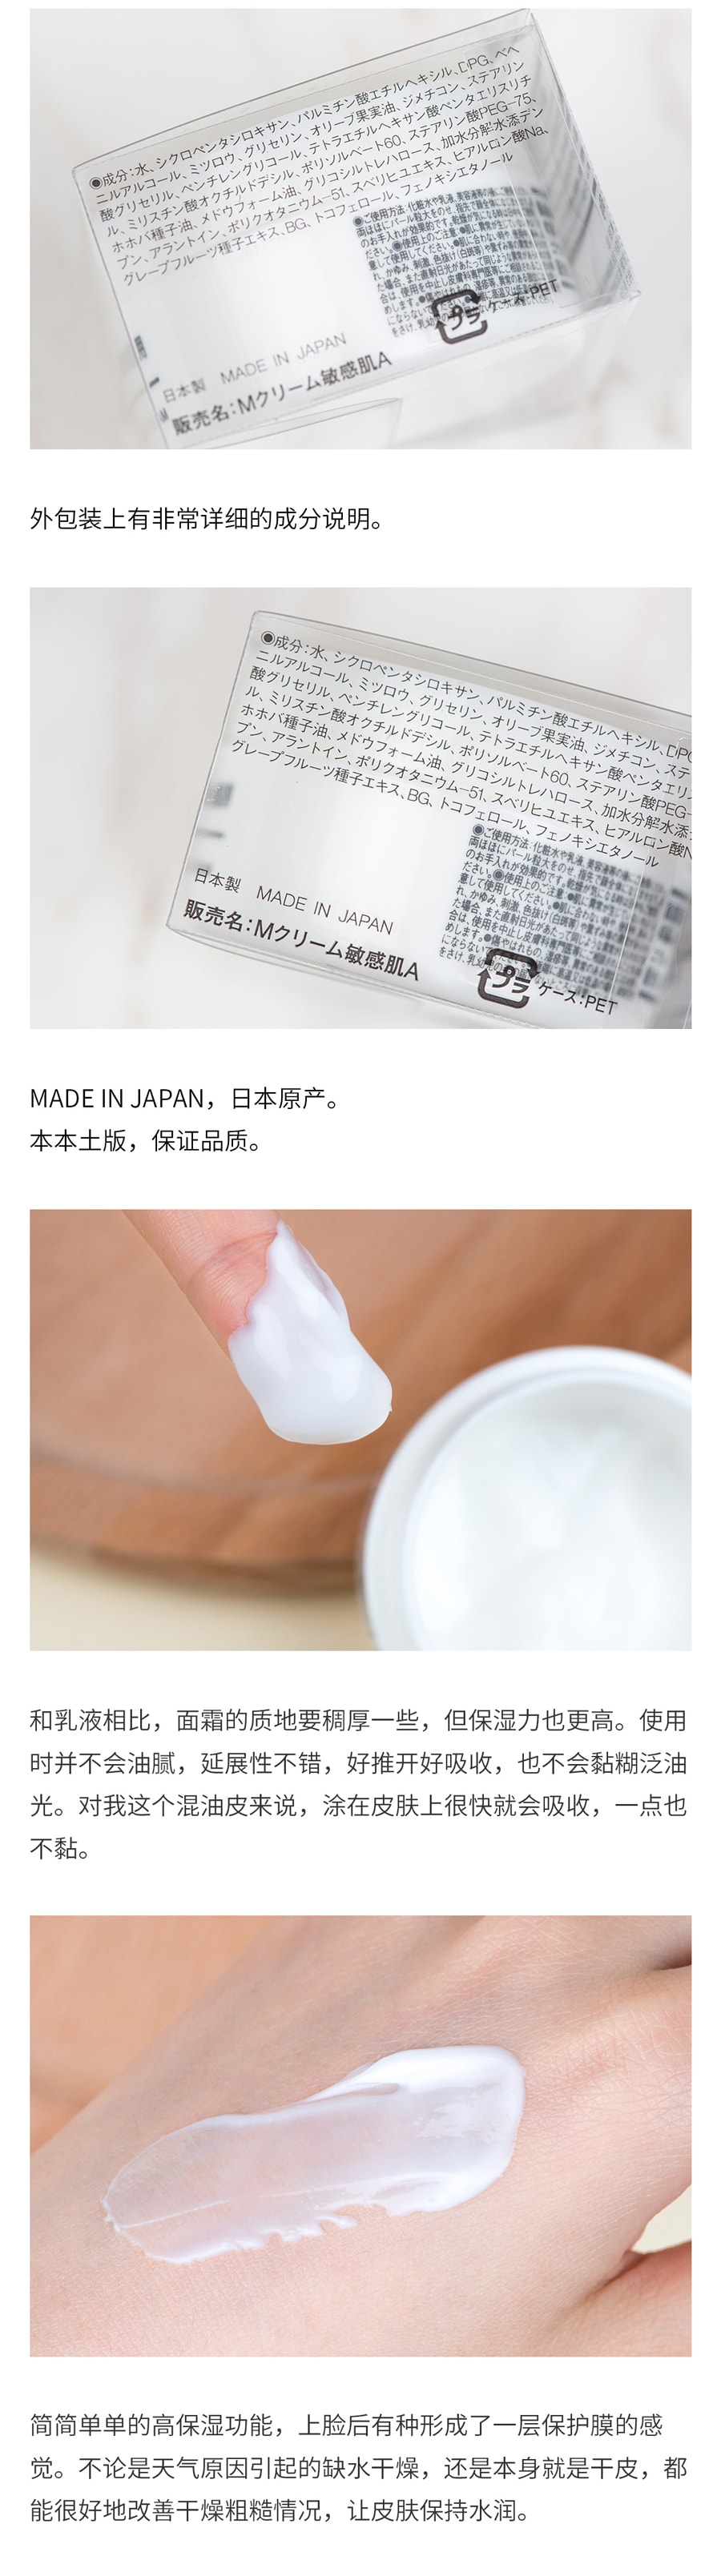 【日本直效郵件】MUJI無印良品 敏感肌膚用保濕霜 50g